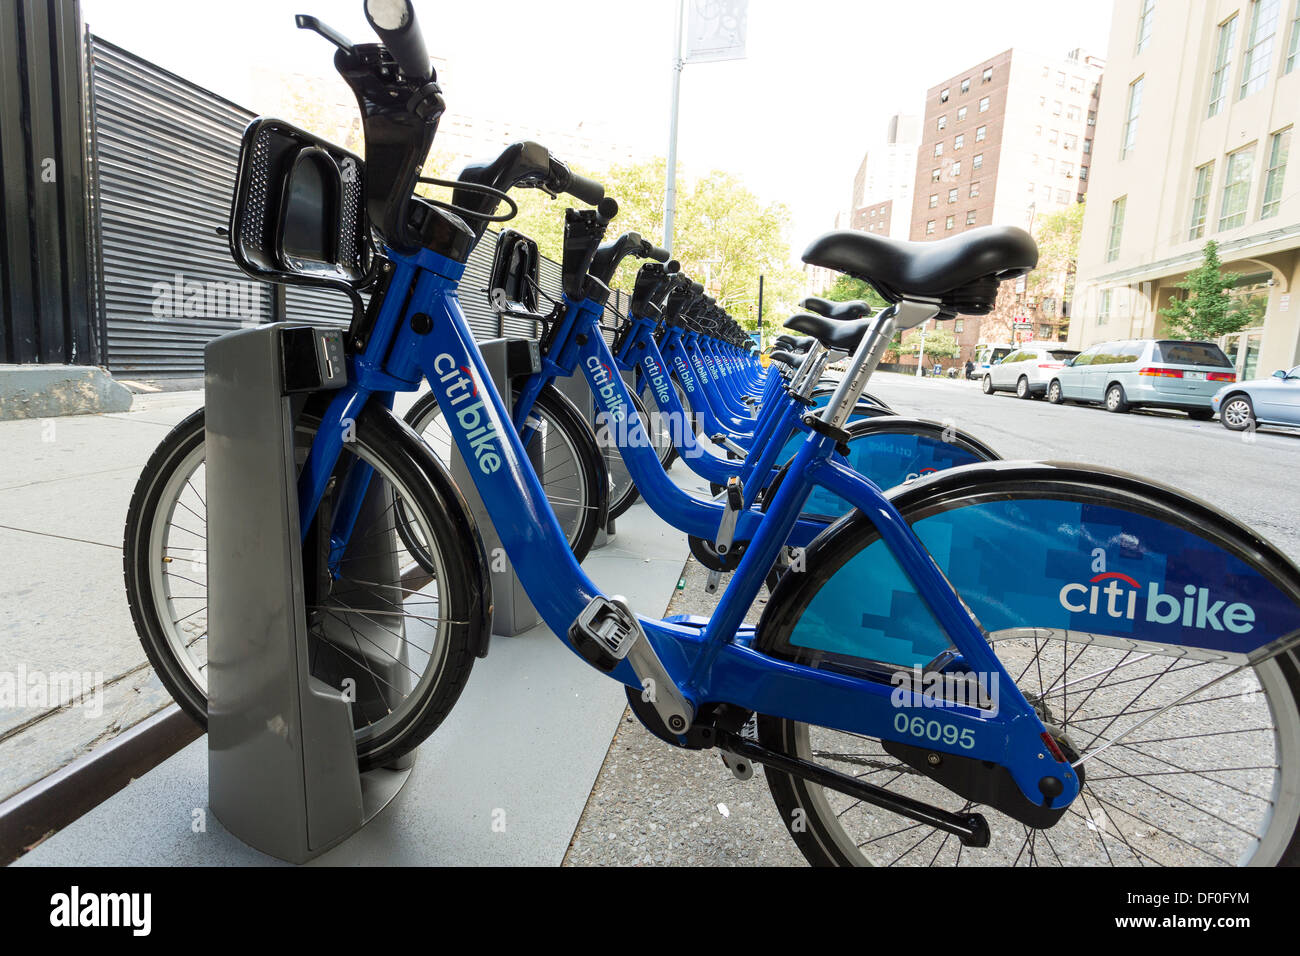 Prêt de bicyclettes publiques Citi, le système de partage de la ville de New York Banque D'Images